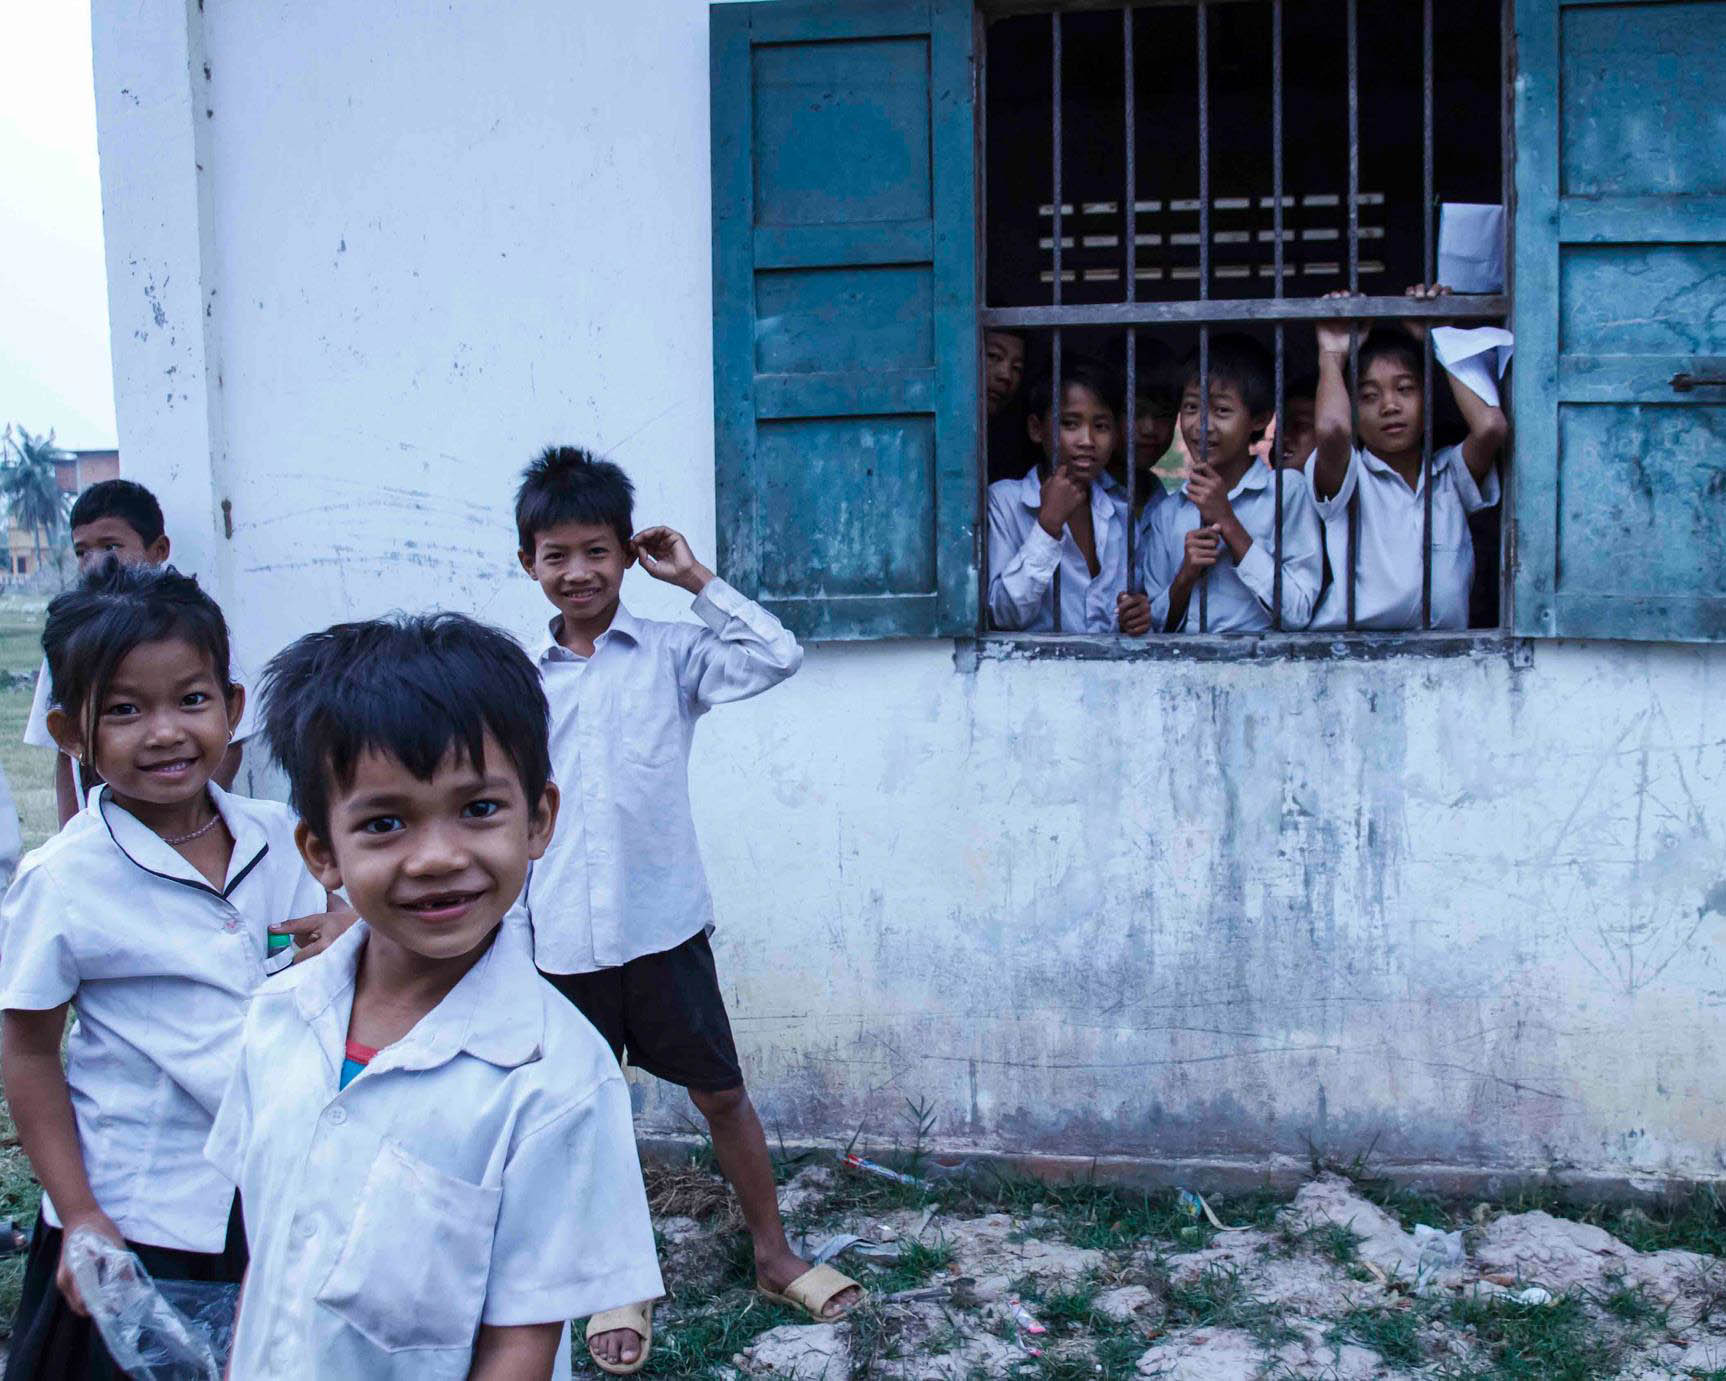 Žáci tráví dlouhé hodiny učením i po škole, Vietnam